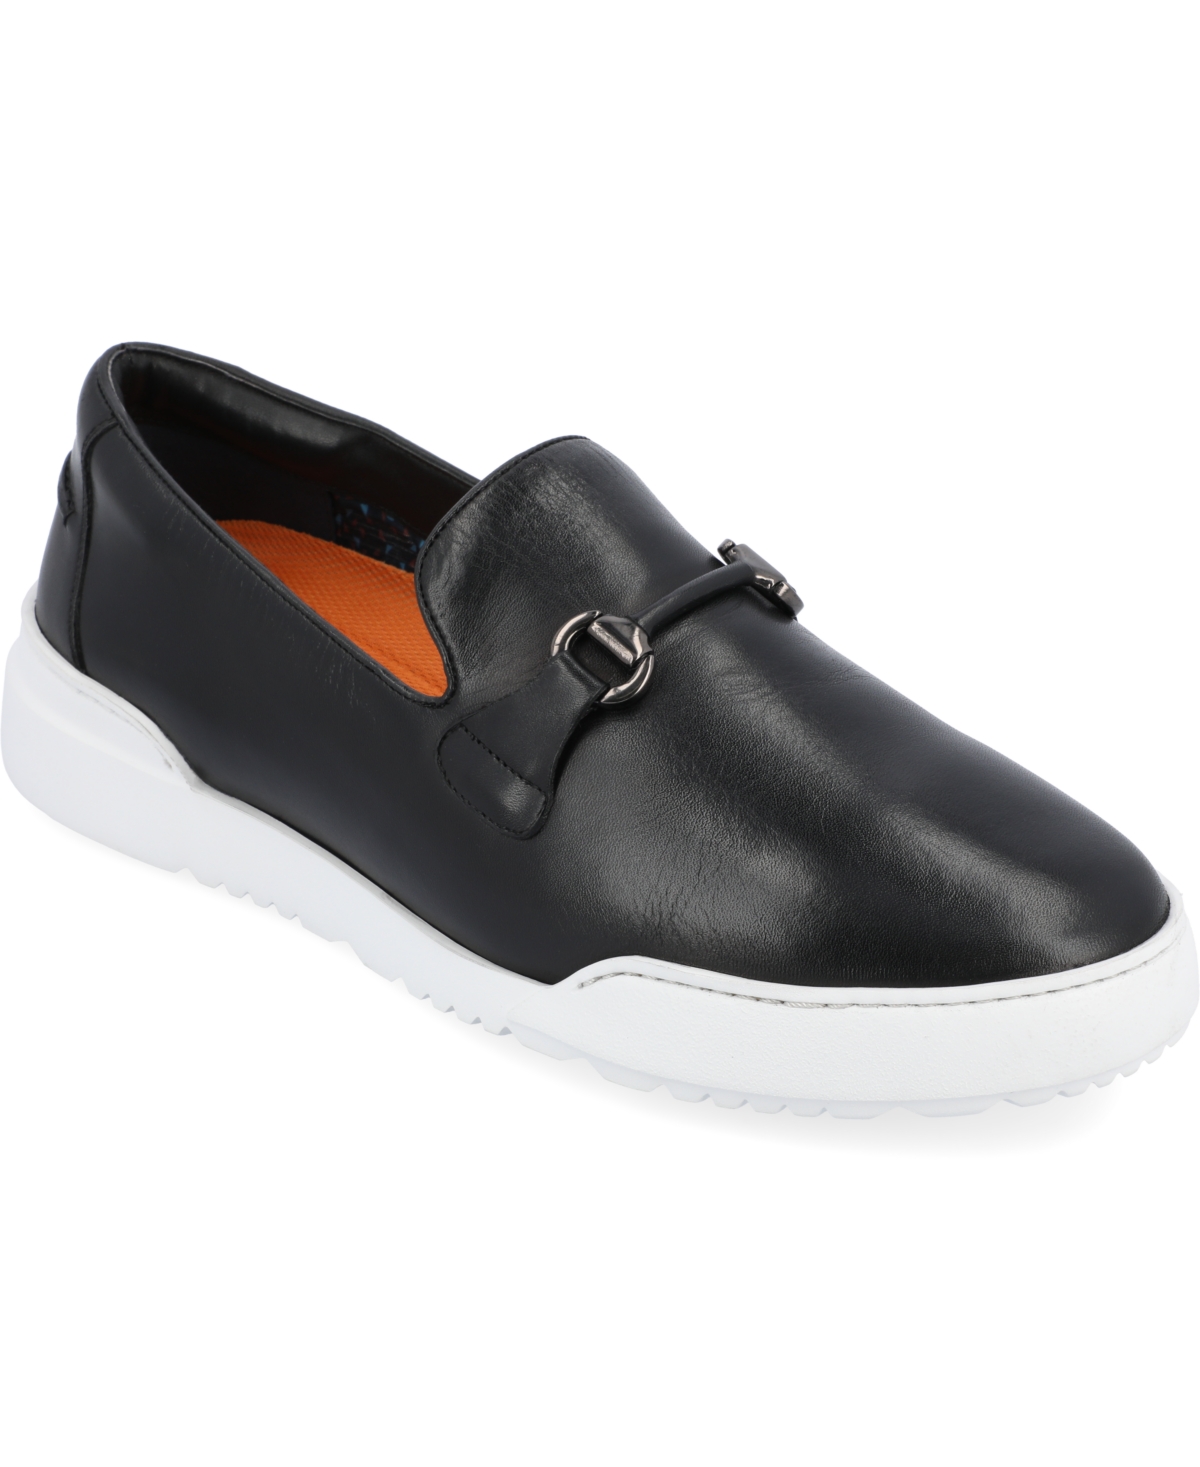 Men's Dane Plain Toe Bit Loafer Casual Shoes - Cognac